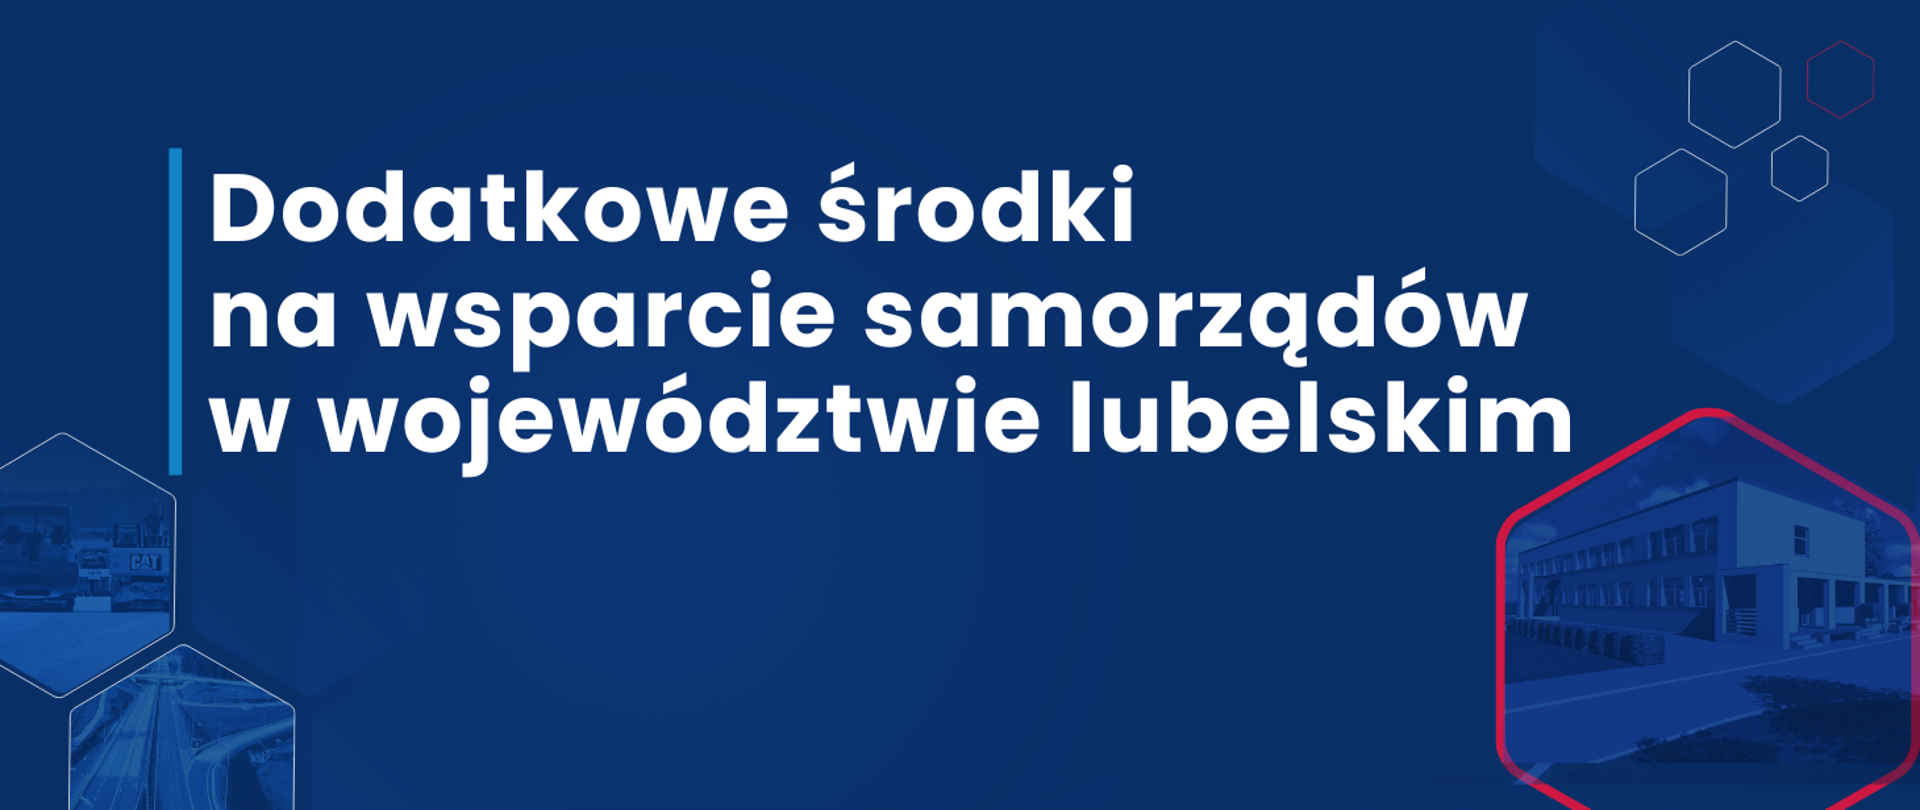 Grafika z napisem: Dodatkowe środki na wsparcie samorządów w województwie lubelskim.